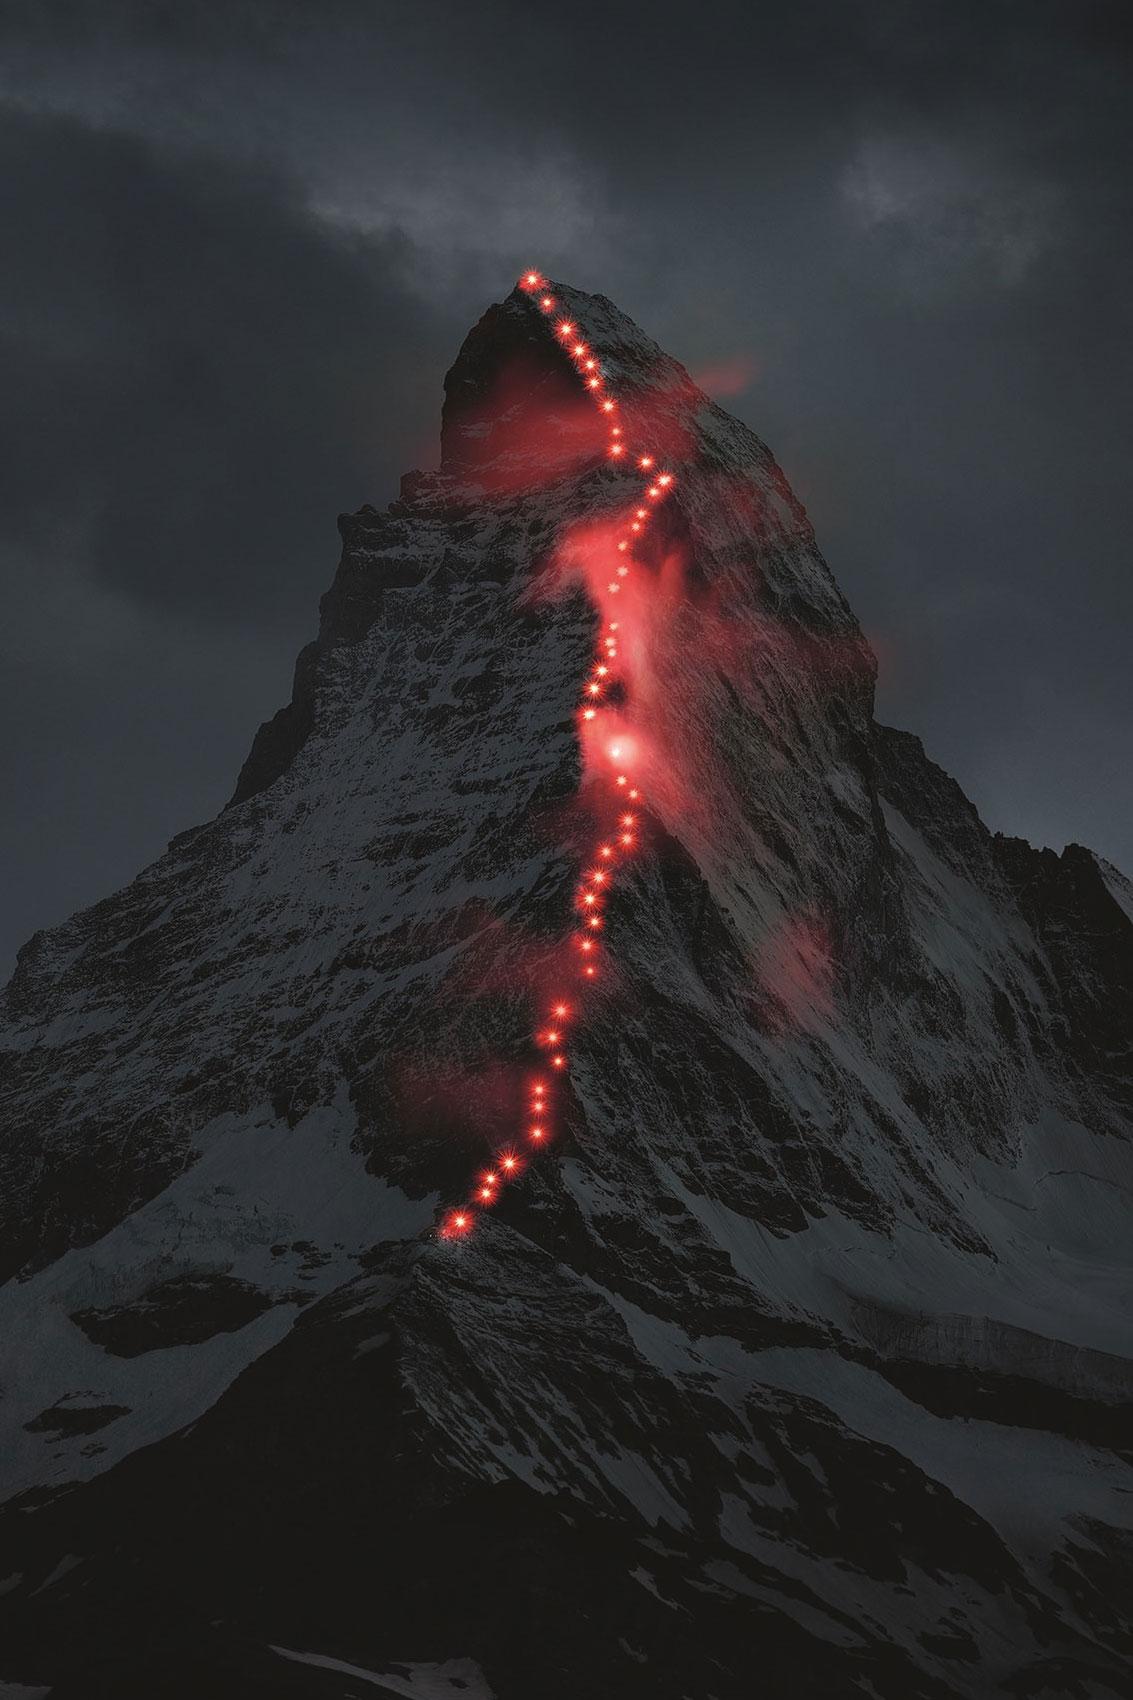 Matterhorn illuminated